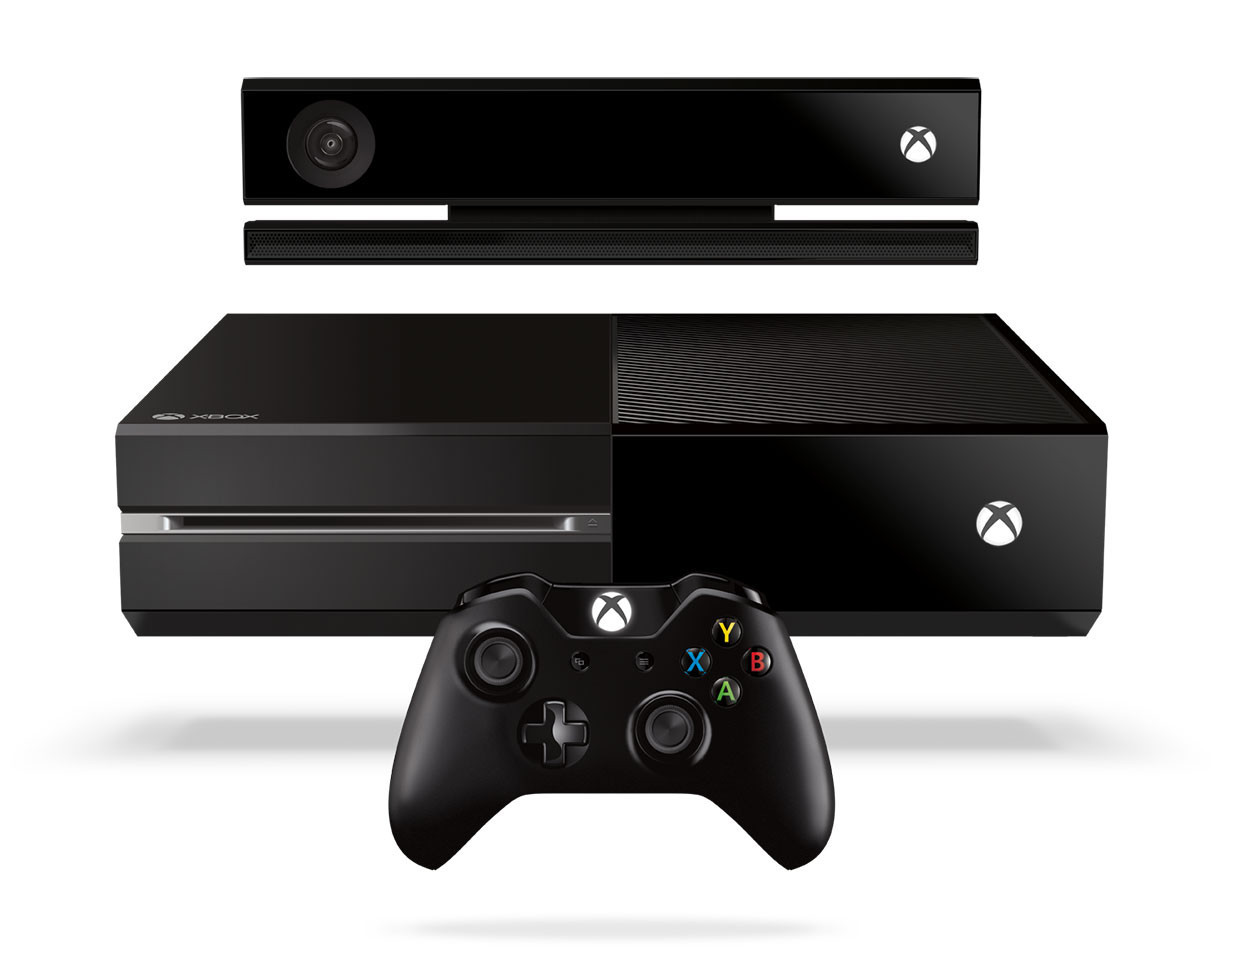 Entretiens Xbox One - CBL, contributeur chez Factornews